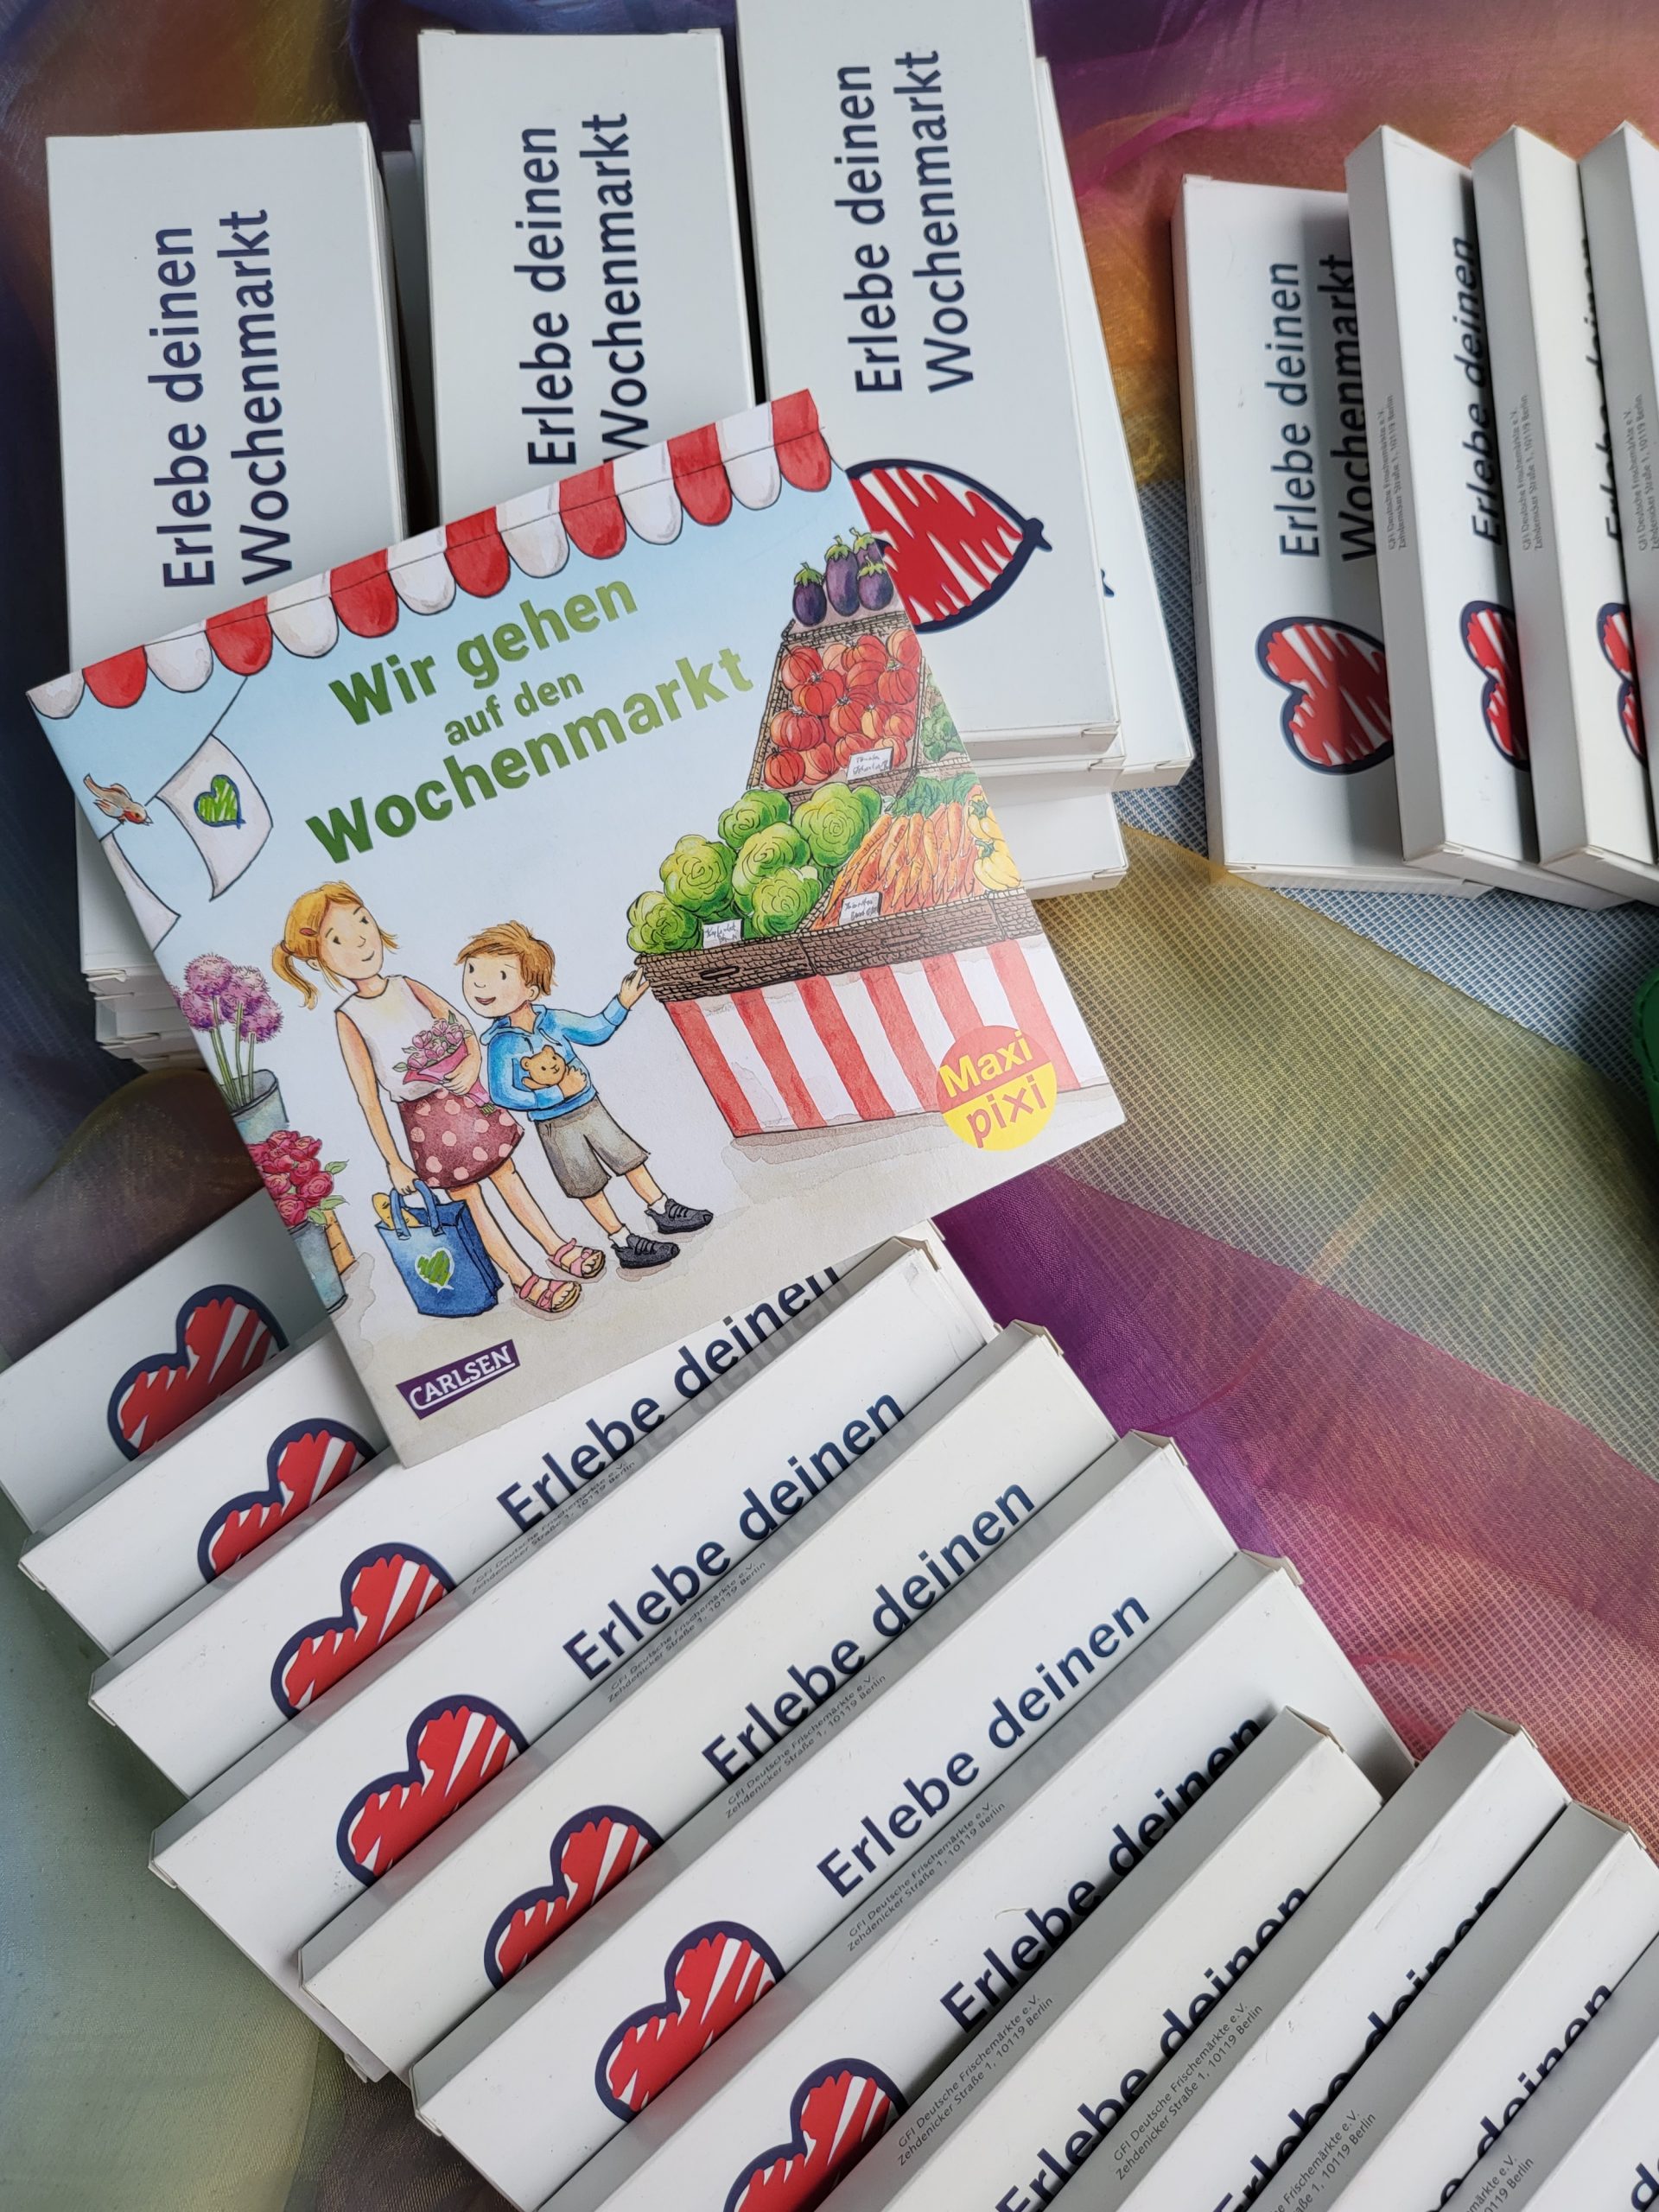 Auf die Marktbesuchenden warten viele Gewinne, unter anderem Pixi-Kinderbücher für die Kleinen. © M3B GmbH/Neele Thiem-Grieger